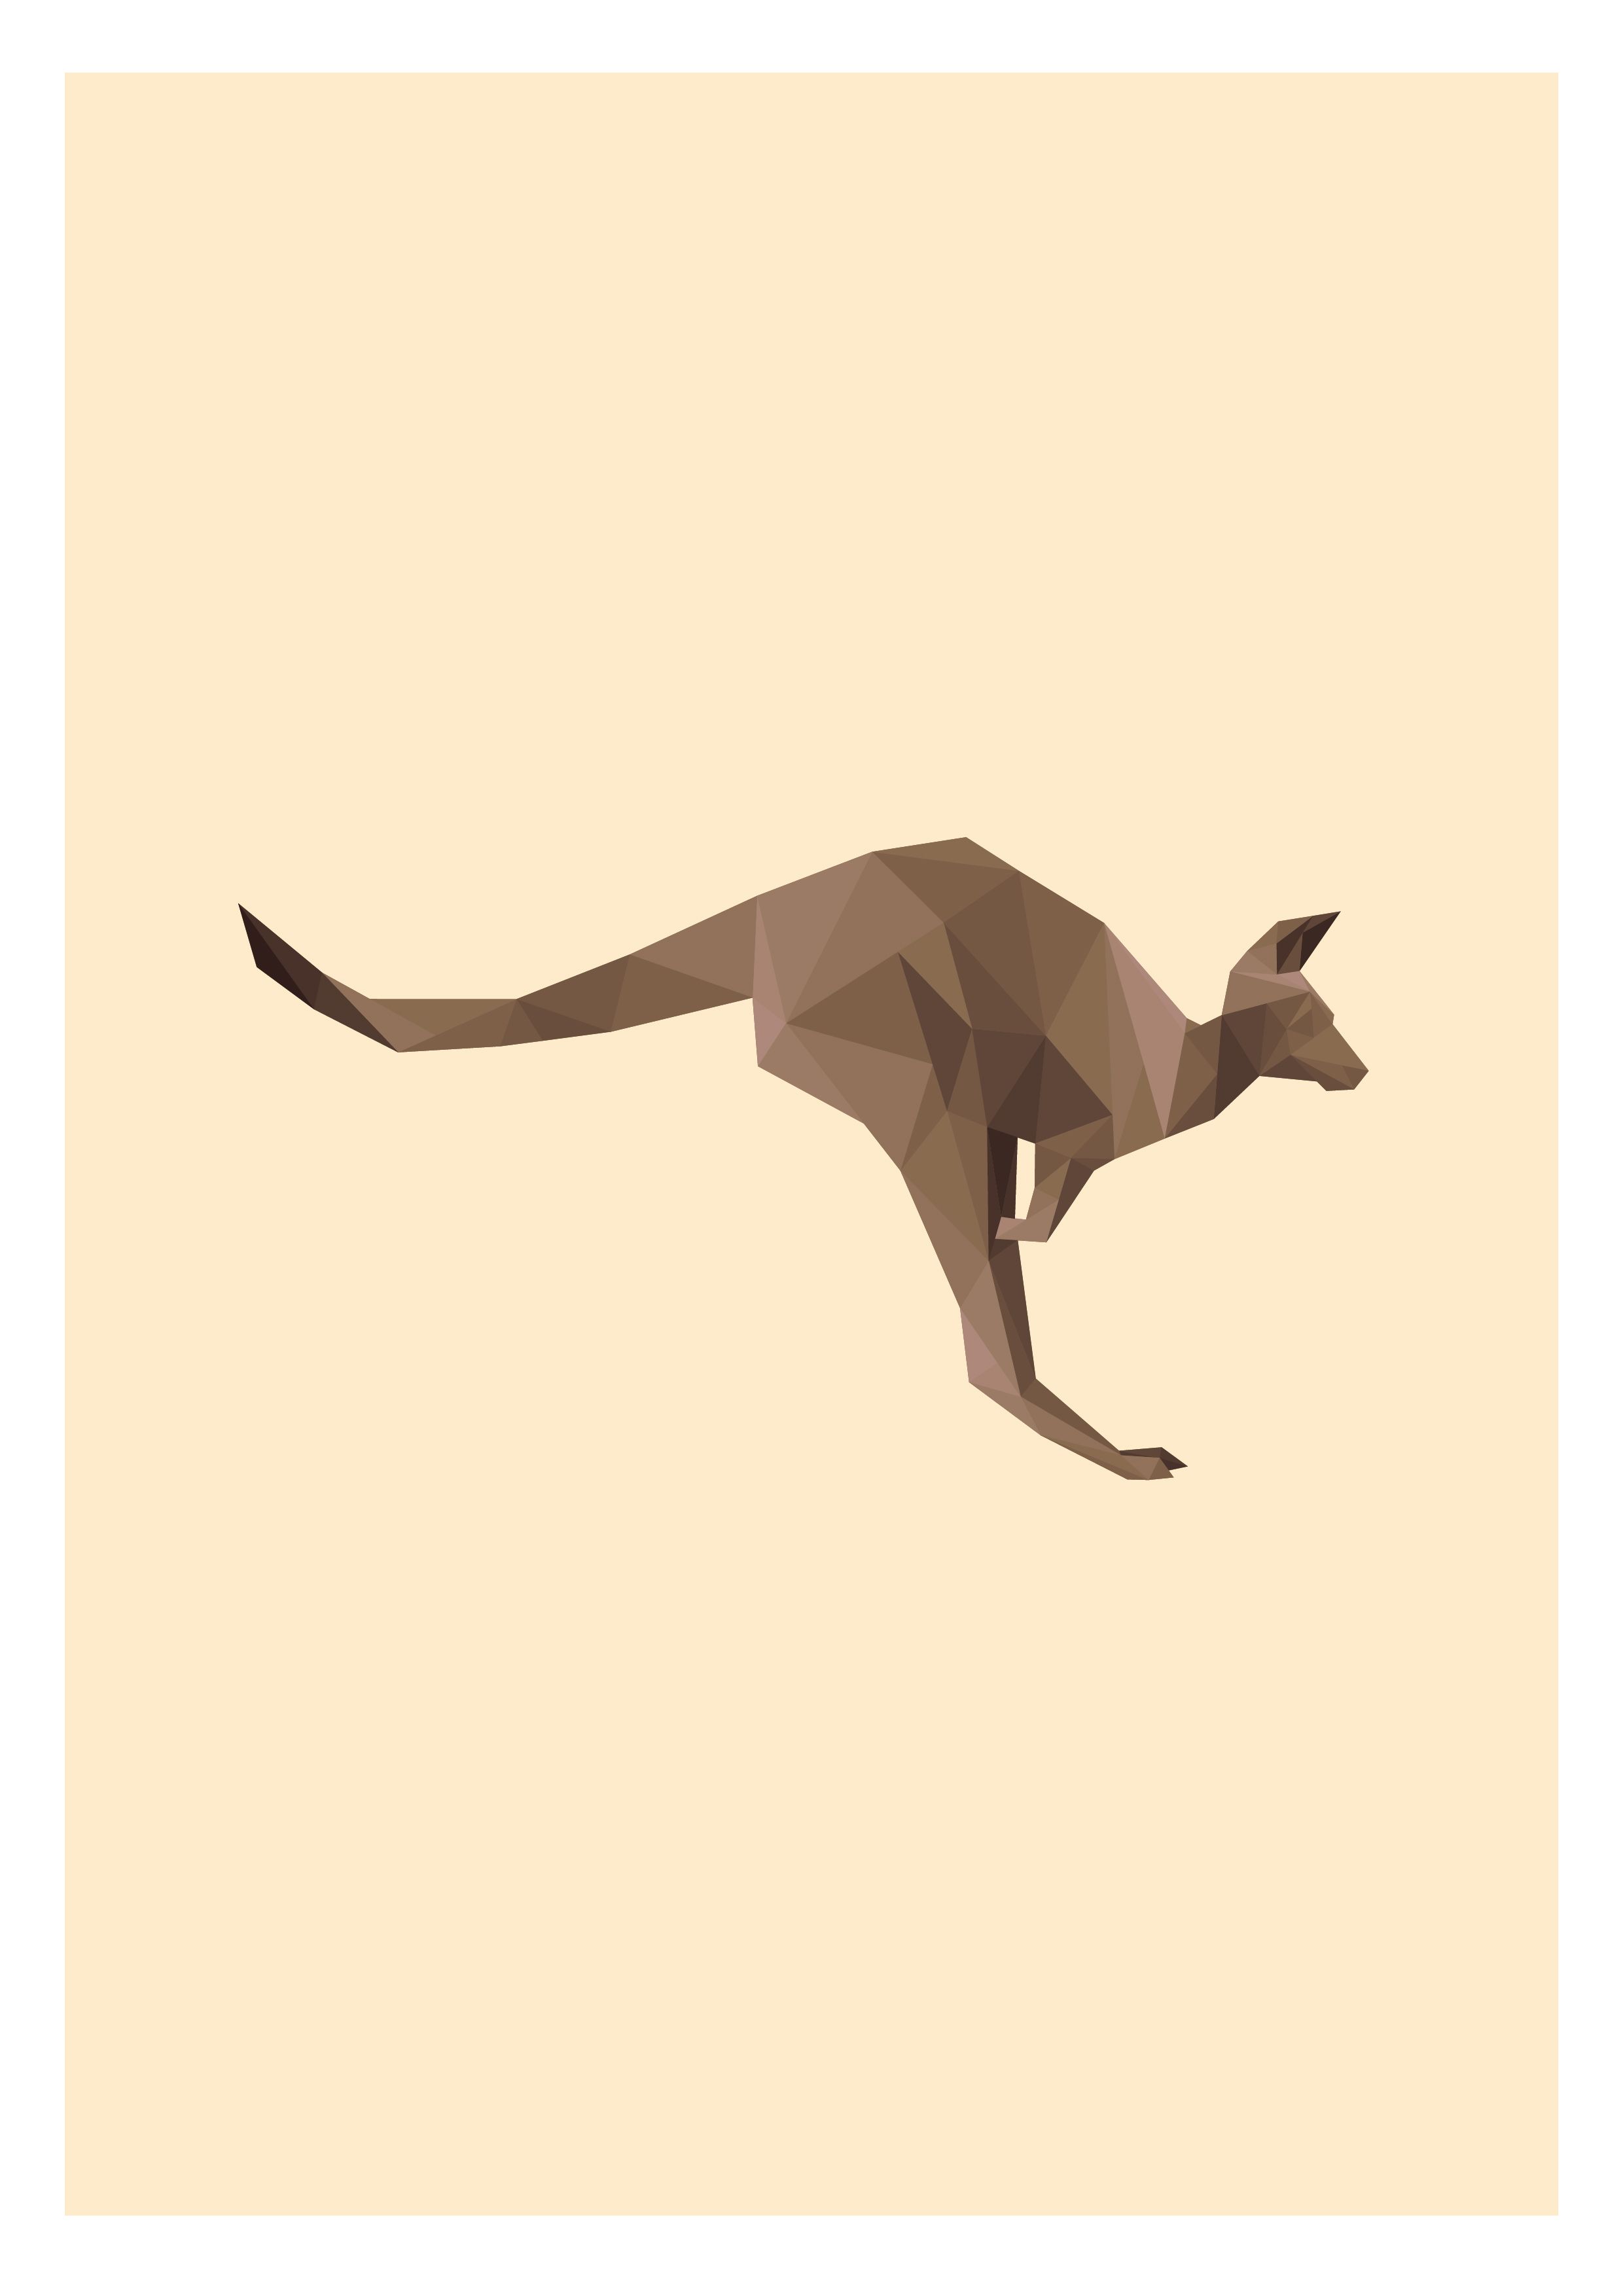 Australian Kangaroo Logo - Australian Kangaroo Illustration. Animal Illustrations